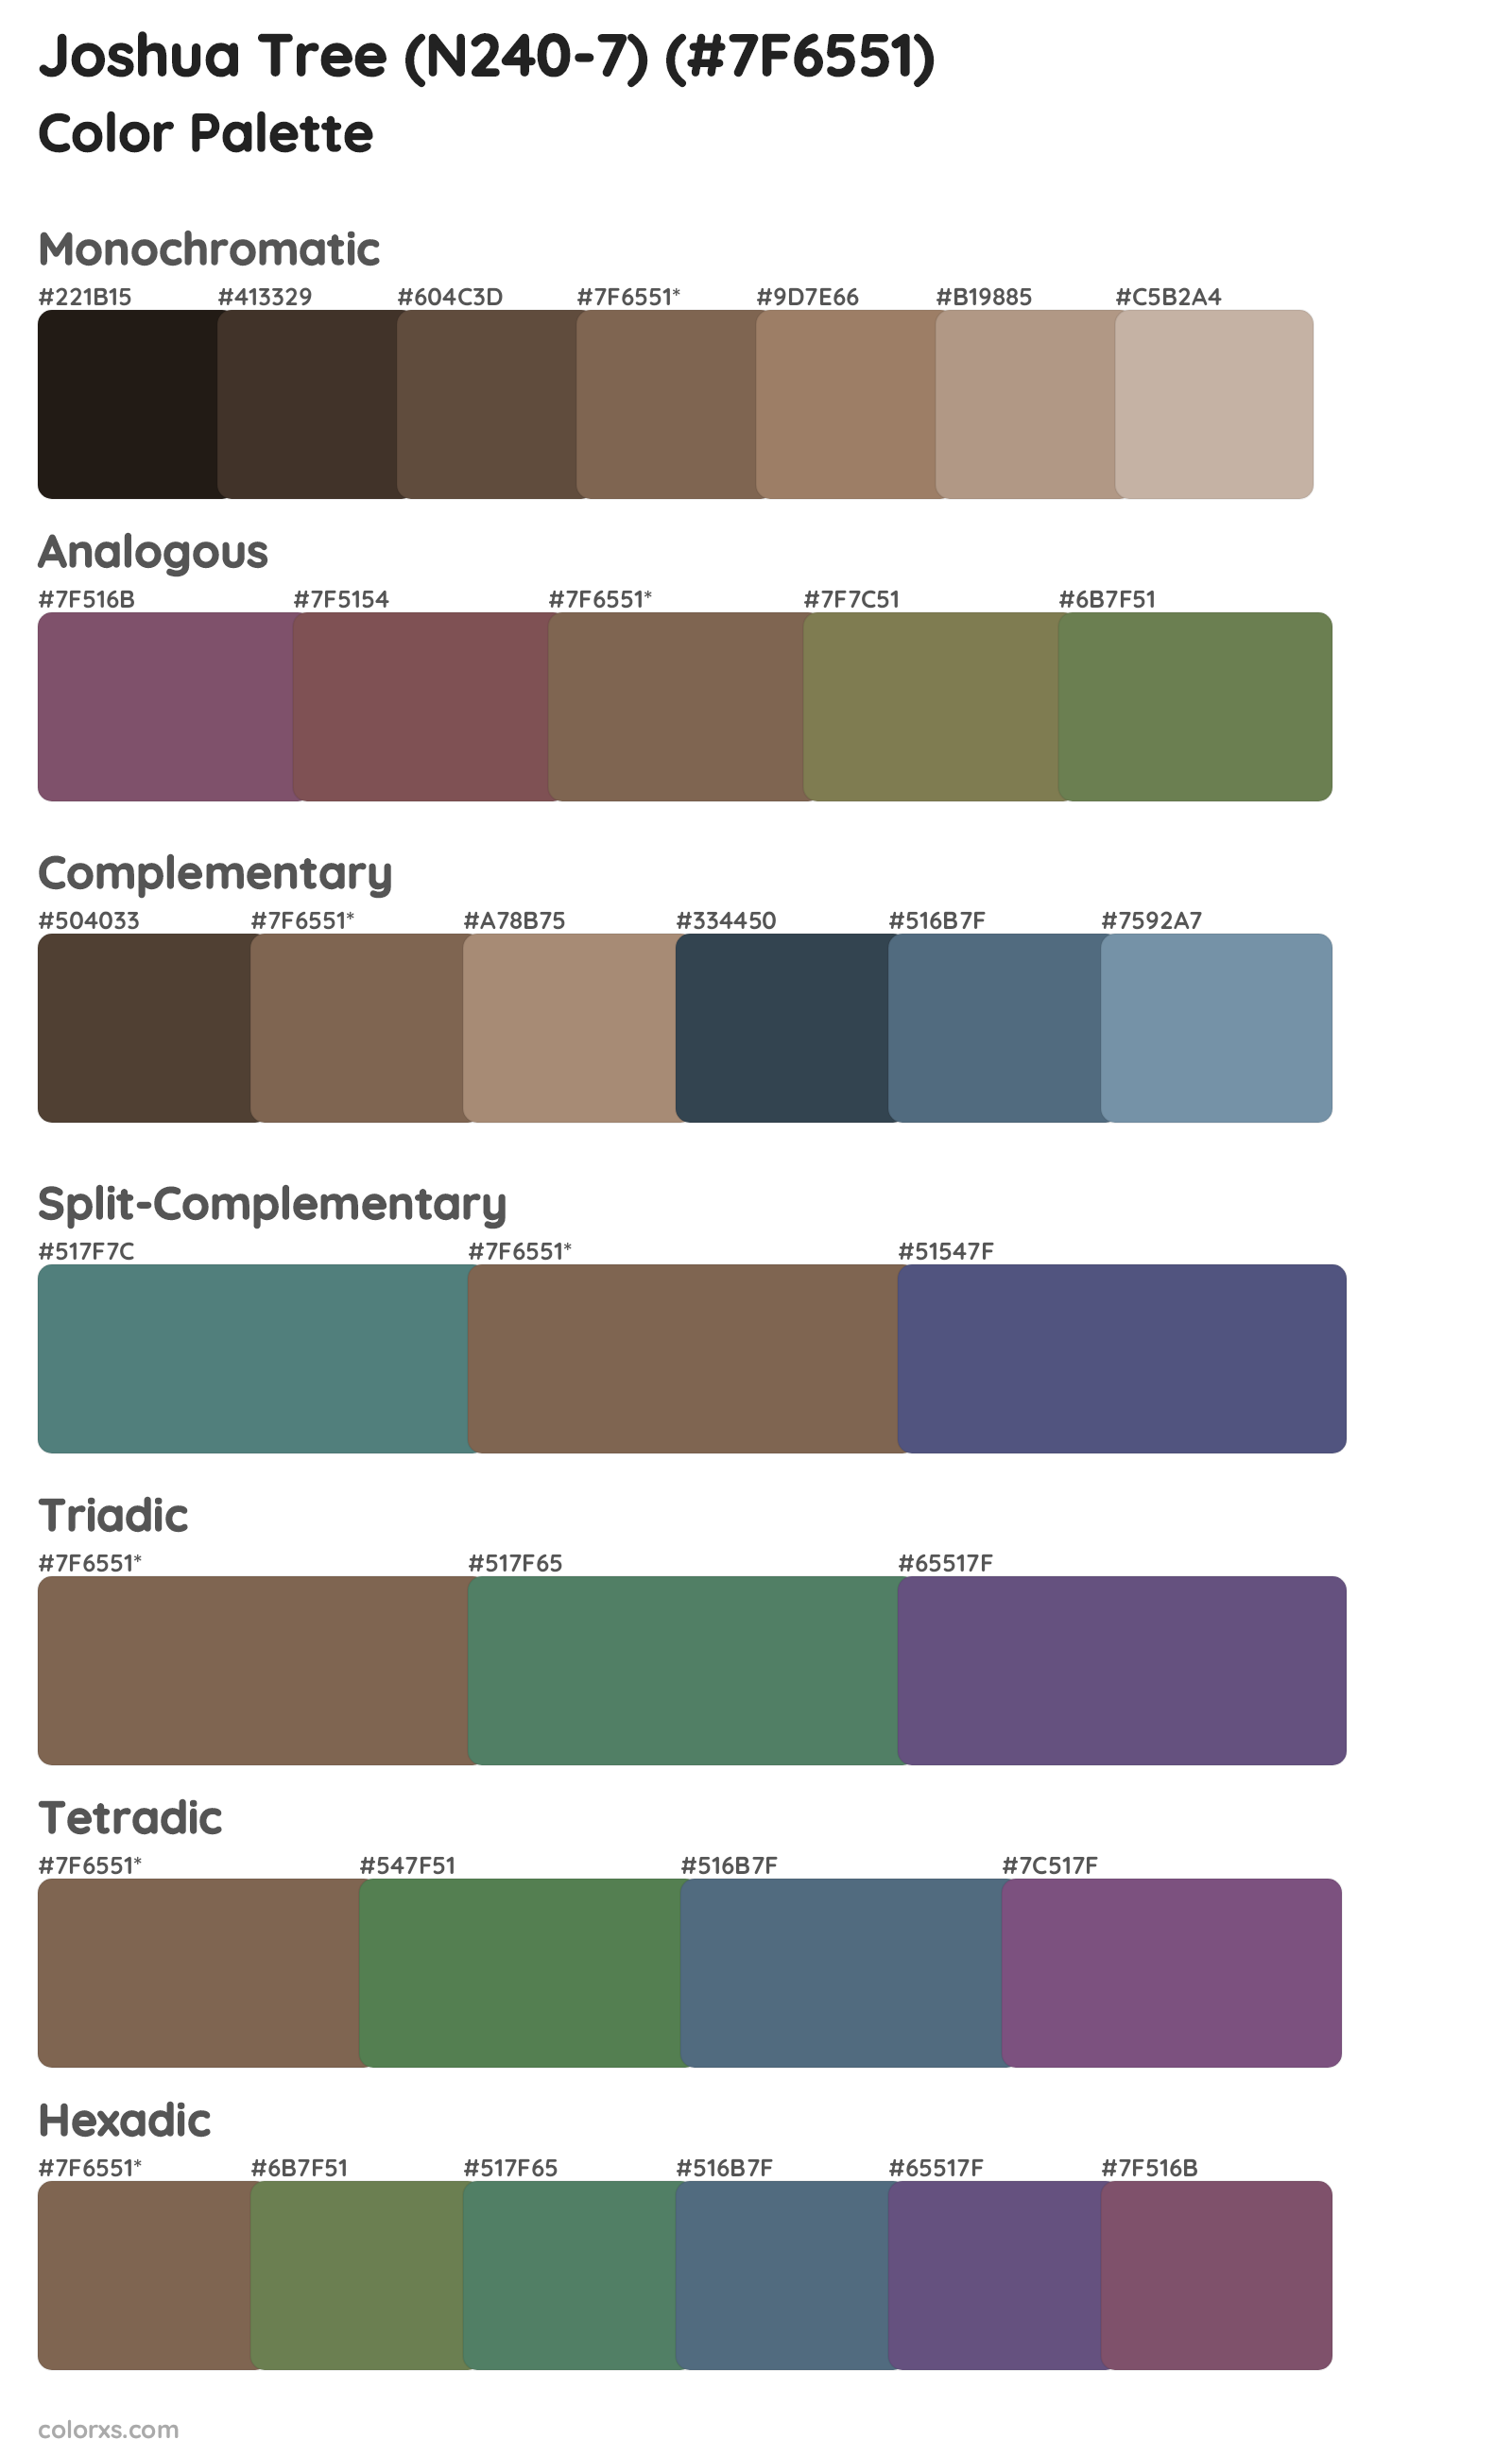 Joshua Tree (N240-7) Color Scheme Palettes